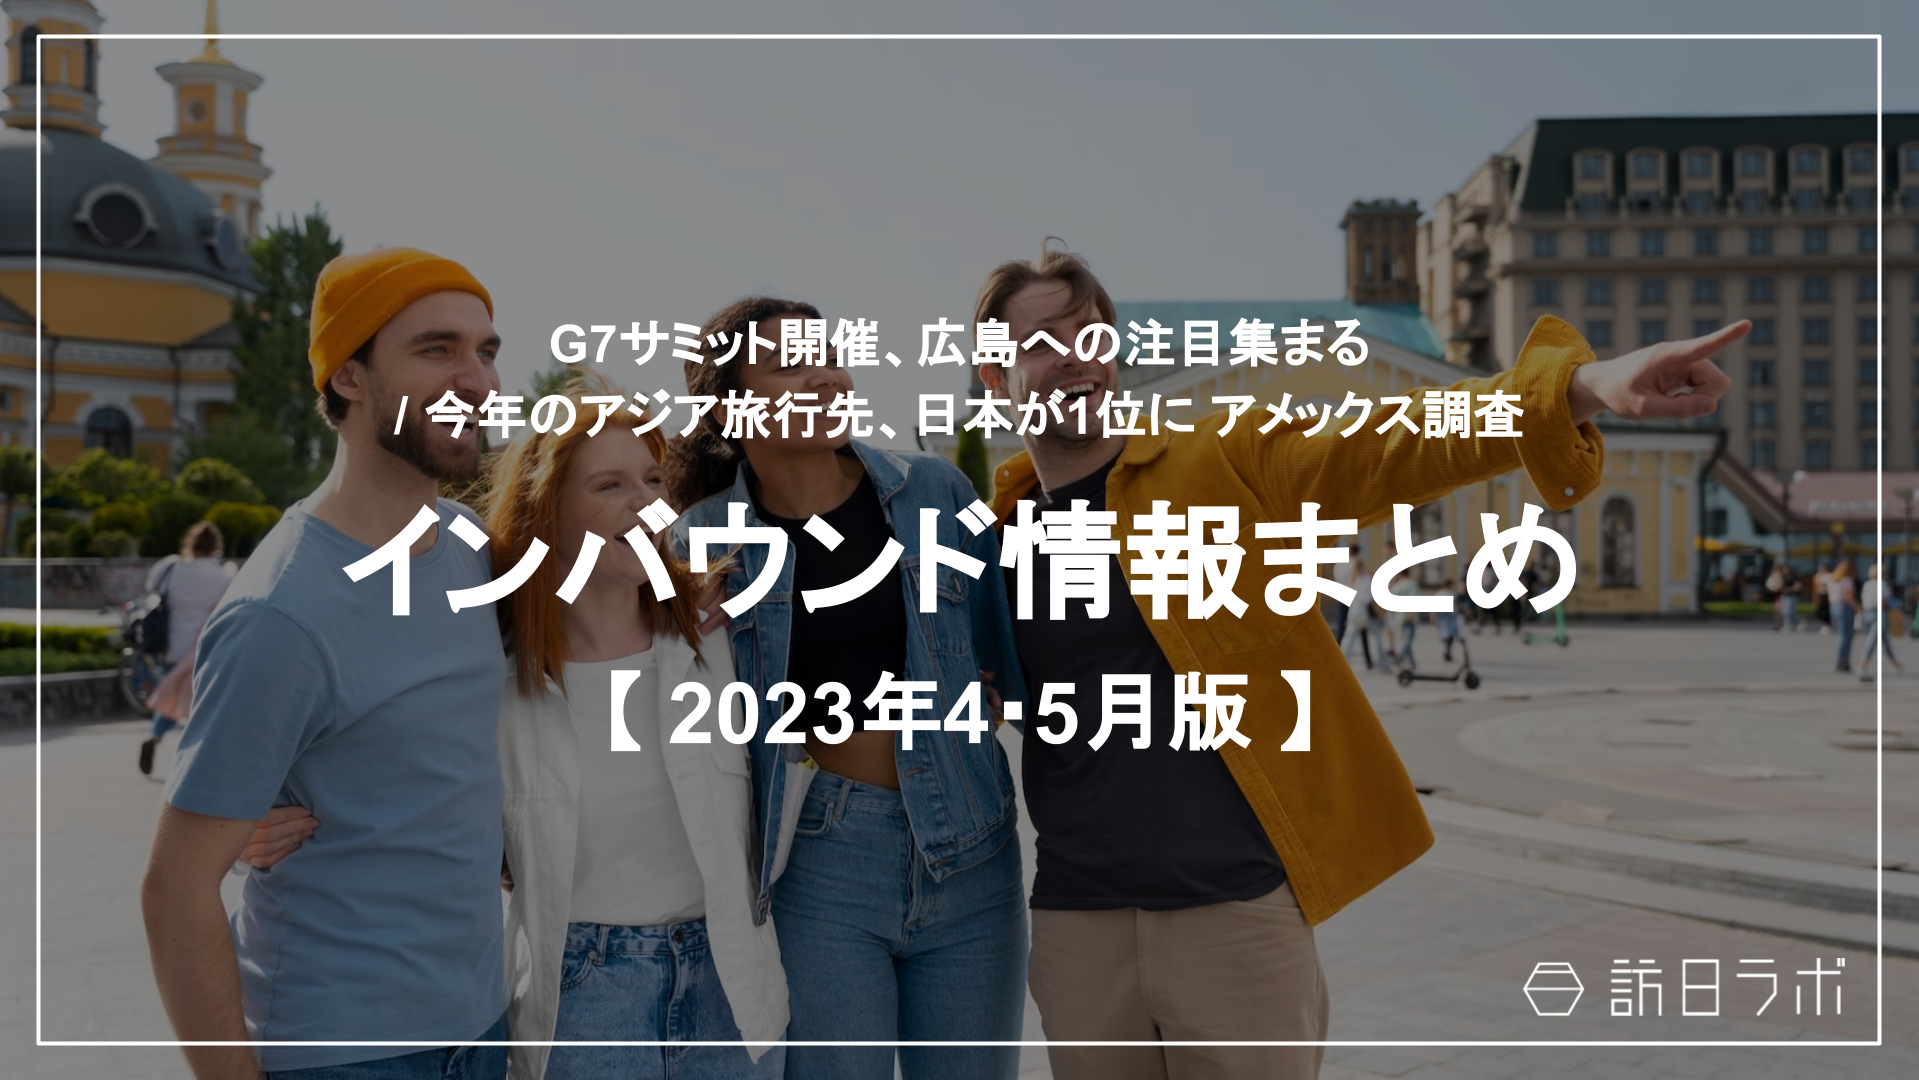 G7サミット、広島へ注目集まる / 今年のアジア旅行先、日本が1位に：インバウンド情報まとめ 【2023年4・5月】